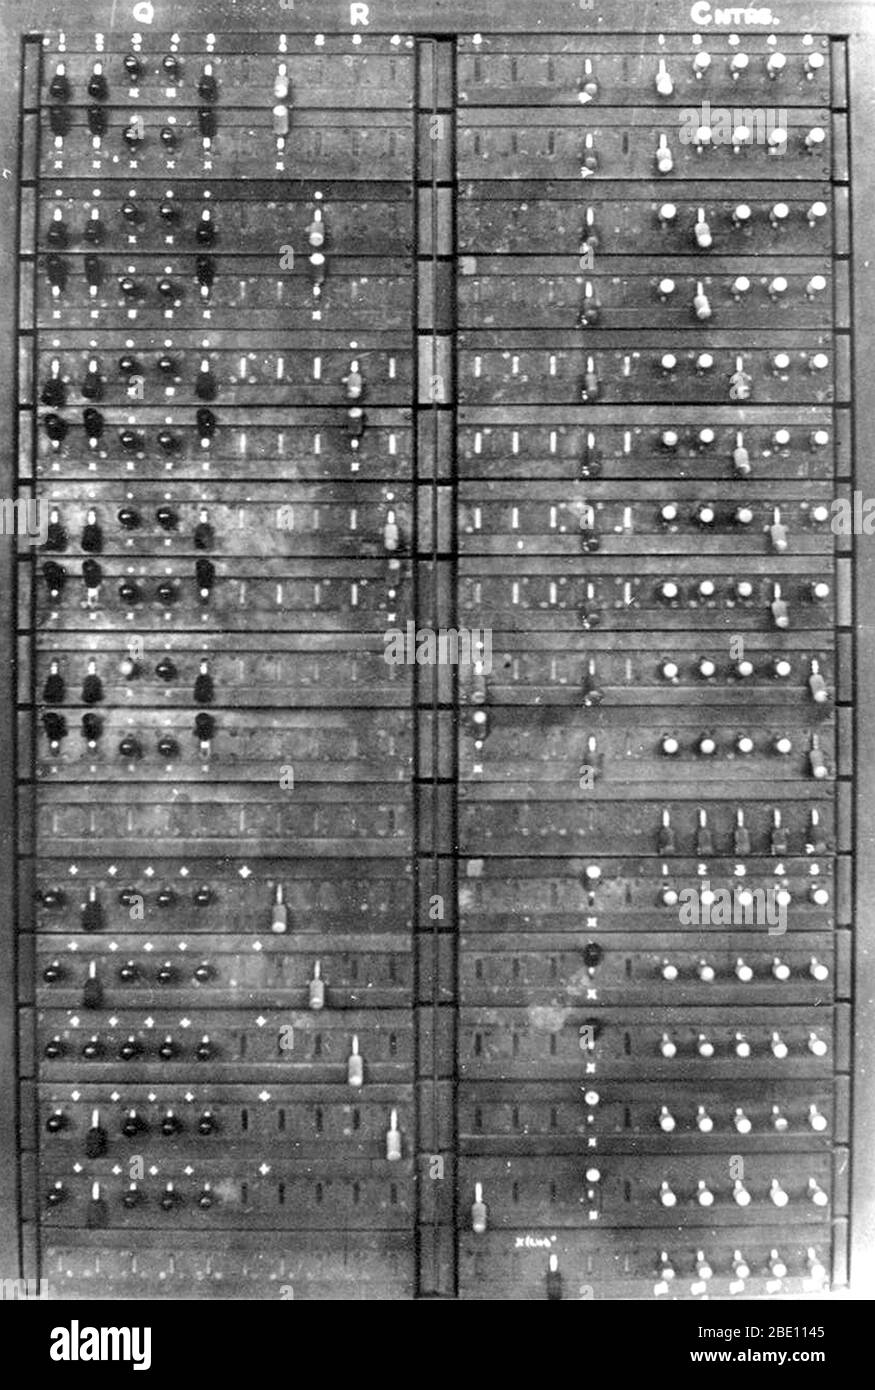 Kriegsfoto eines Teils eines Colossus-Computers mit dem Q-Panel, 1945. Colossus war ein Computerset, das von britischen Codebrechern in den Jahren 1943-1945 entwickelt wurde, um bei der Kryptanalyse der Lorenz-Chiffre der deutschen Armee zu helfen. Colossus verwendete thermionische Ventile (Vakuumröhren), um Boolesche und Zähloperationen durchzuführen. Colossus gilt damit als weltweit erster programmierbarer, elektronischer, digitaler Computer, obwohl er über Schalter und Stecker und nicht über ein gespeichertes Programm programmiert wurde. Colossus wurde von dem forschenden Telefoningenieur Tommy Flowers entworfen. Alan Turing's Verwendung von probabilit Stockfoto